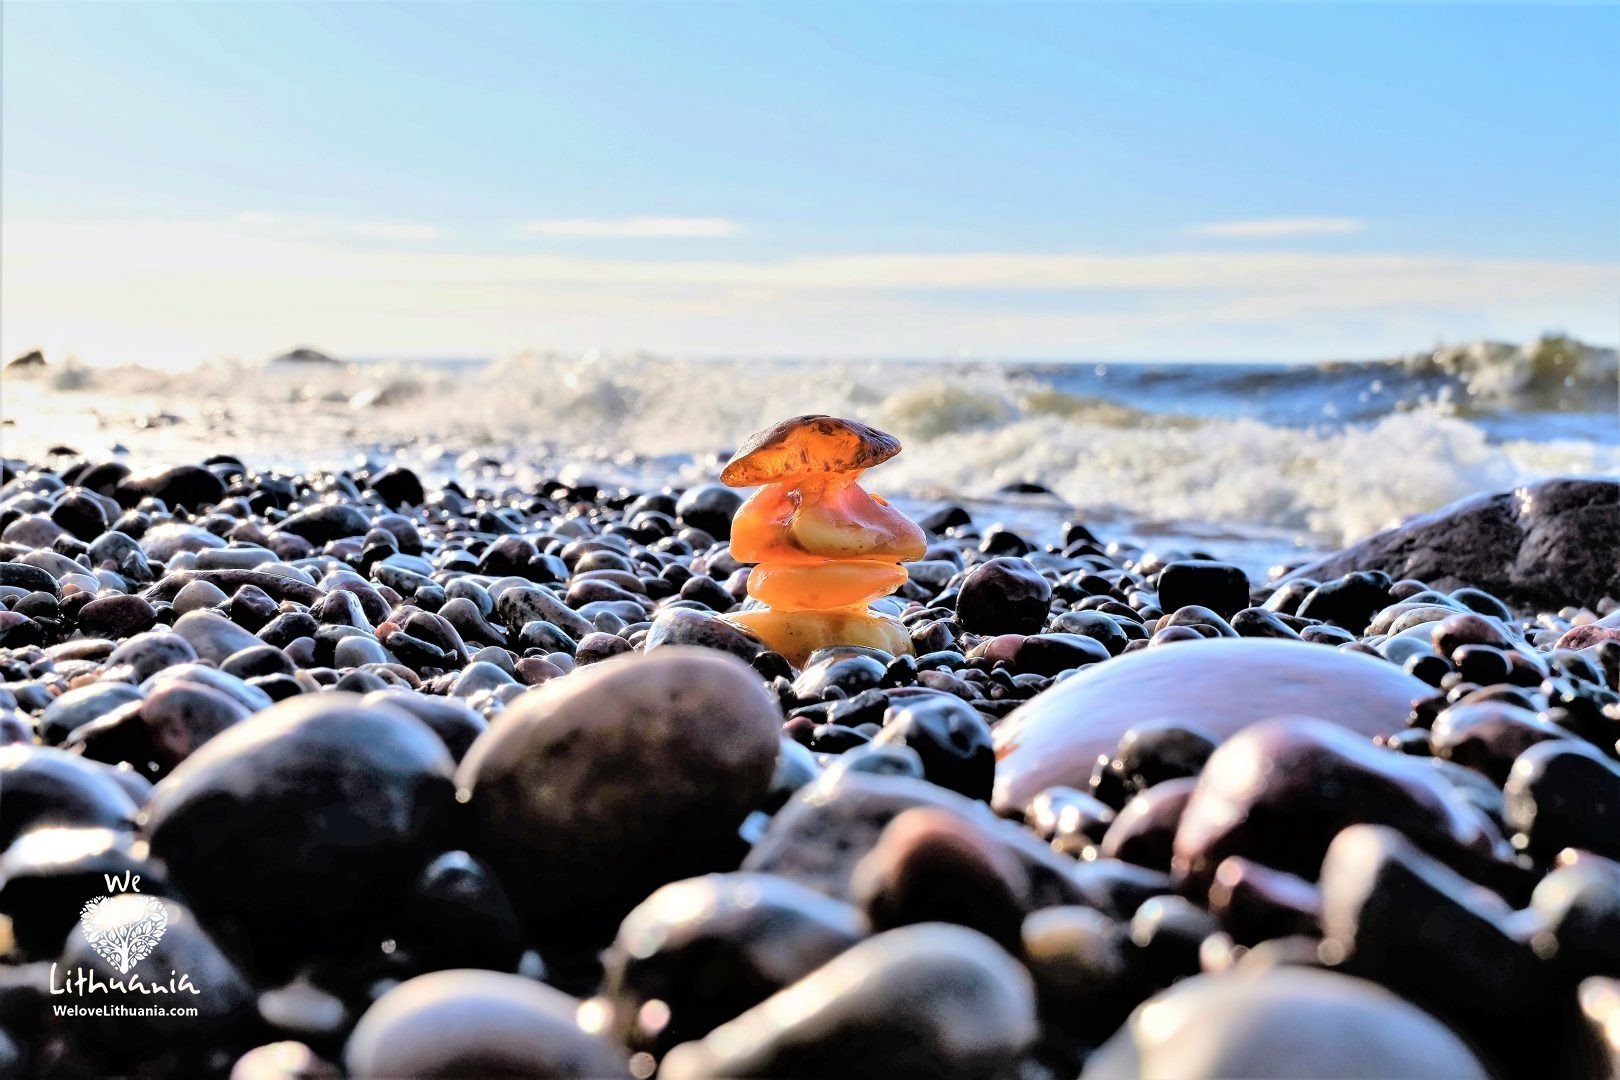 Baltijos auksas (gintaras) išplaunamas į pakrantę ir užstrigę tarp jūros nuskalautų akmenukų